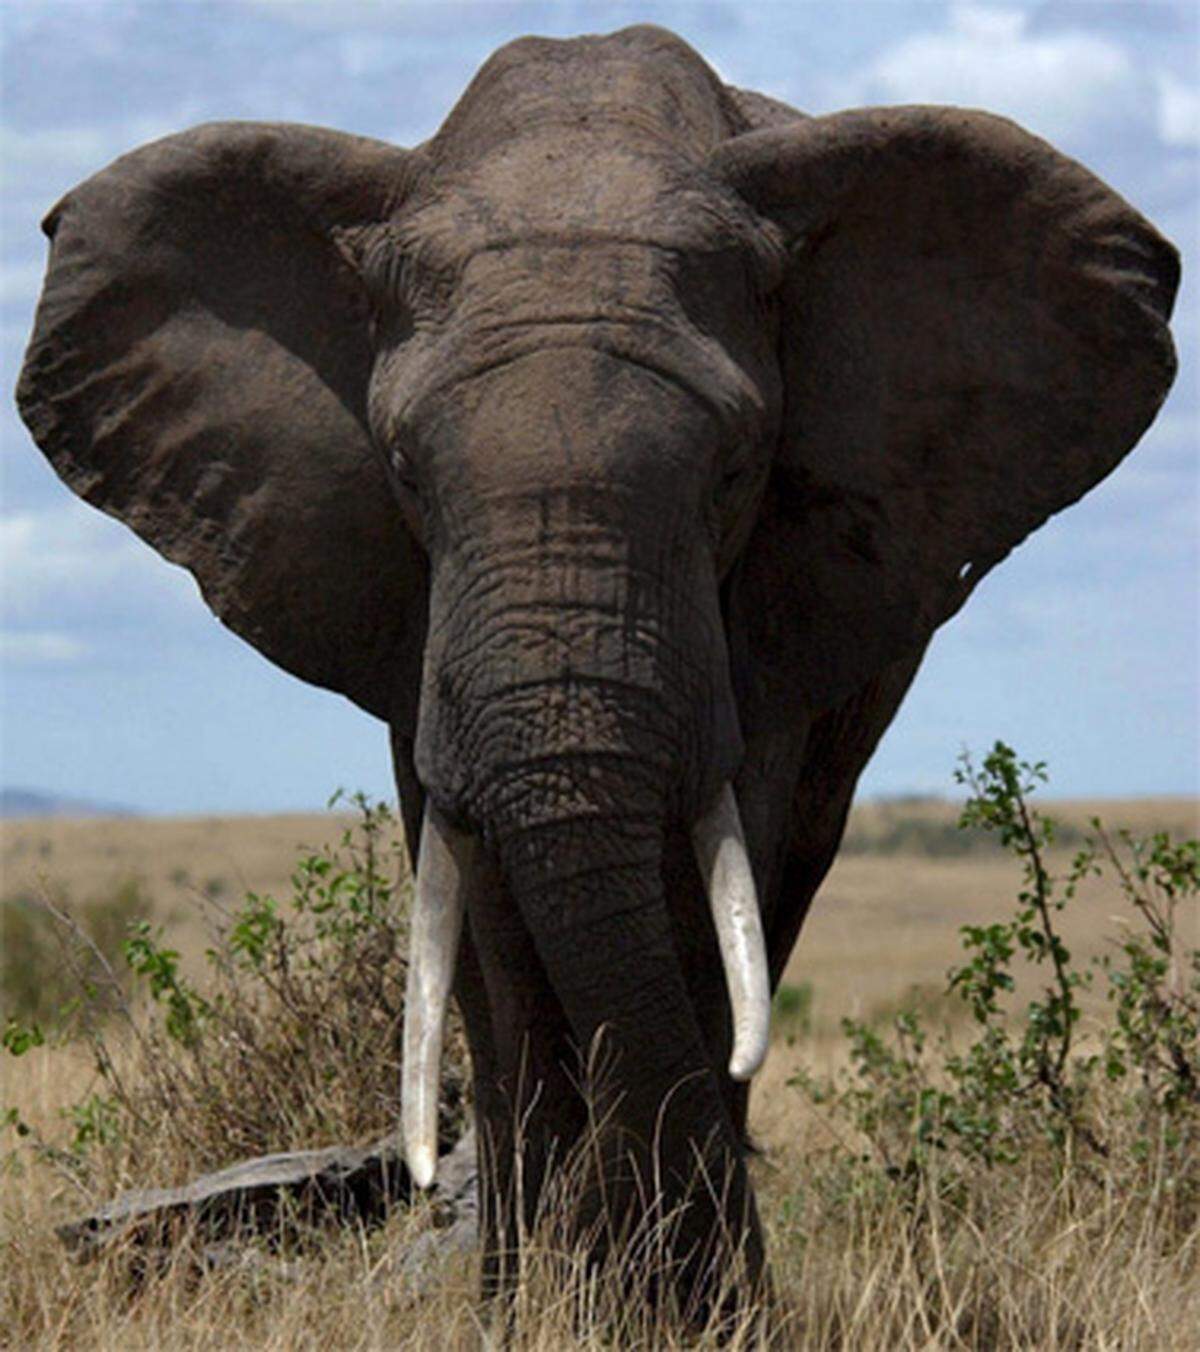 Elefanten sind nicht so freundlich, wie Benjamin Blümchen das suggeriert. 500 Menschen werden jährlich totgetrampelt oder aufgespießt.